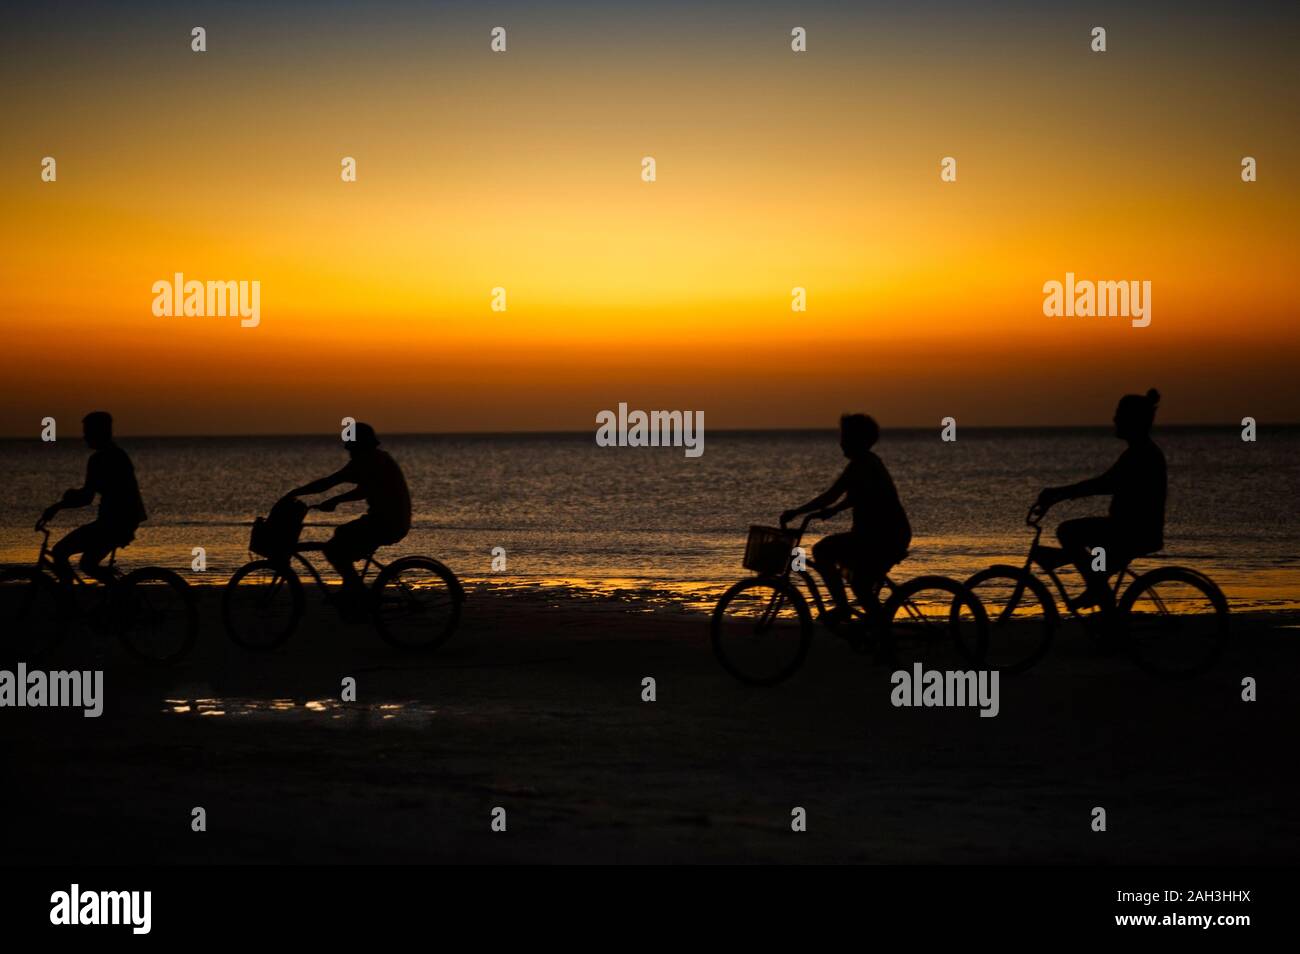 Una corsa in bicicletta sull'isola di Holbox spiaggia tramonto in Messico. Persone in bicicletta sulla spiaggia caraibica al tramonto. Foto Stock